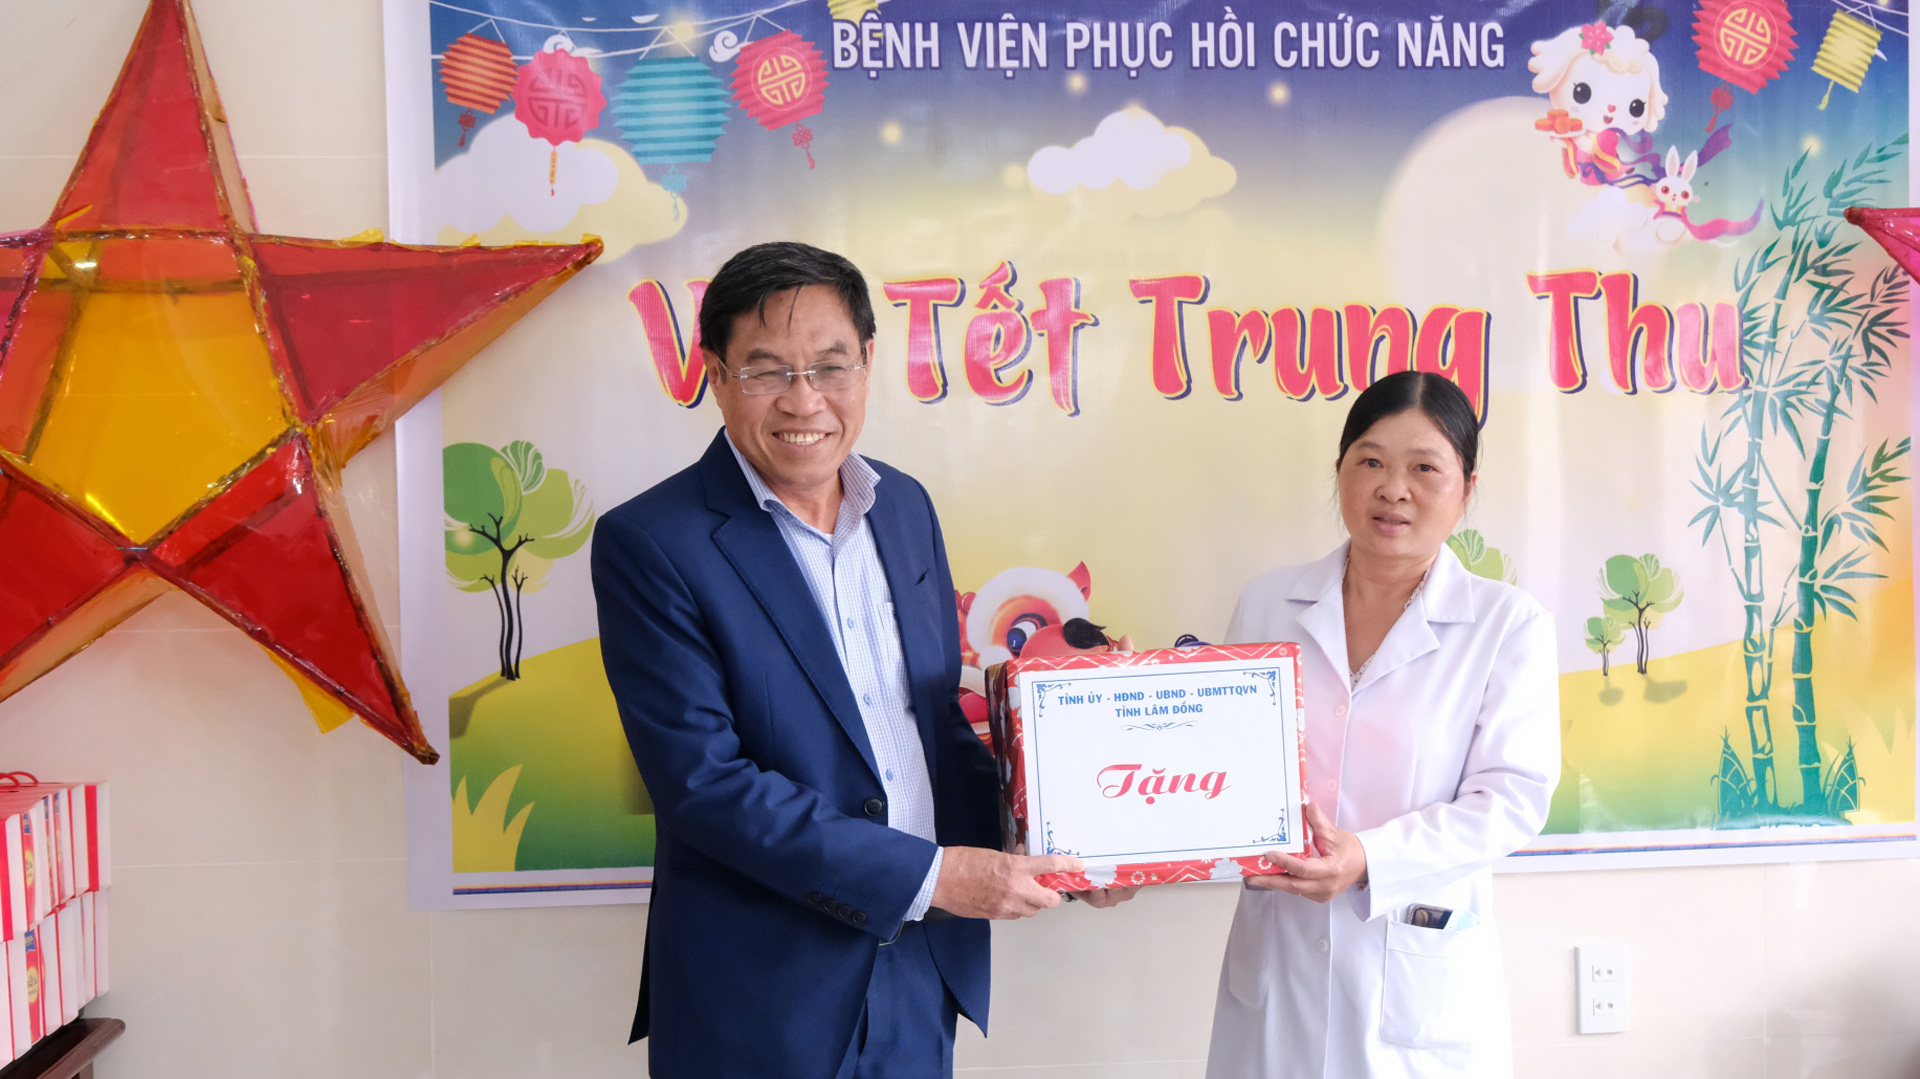 Phó Chủ tịch UBND tỉnh Võ Ngọc Hiệp tặng quà Bệnh viện Phục hồi chức năng